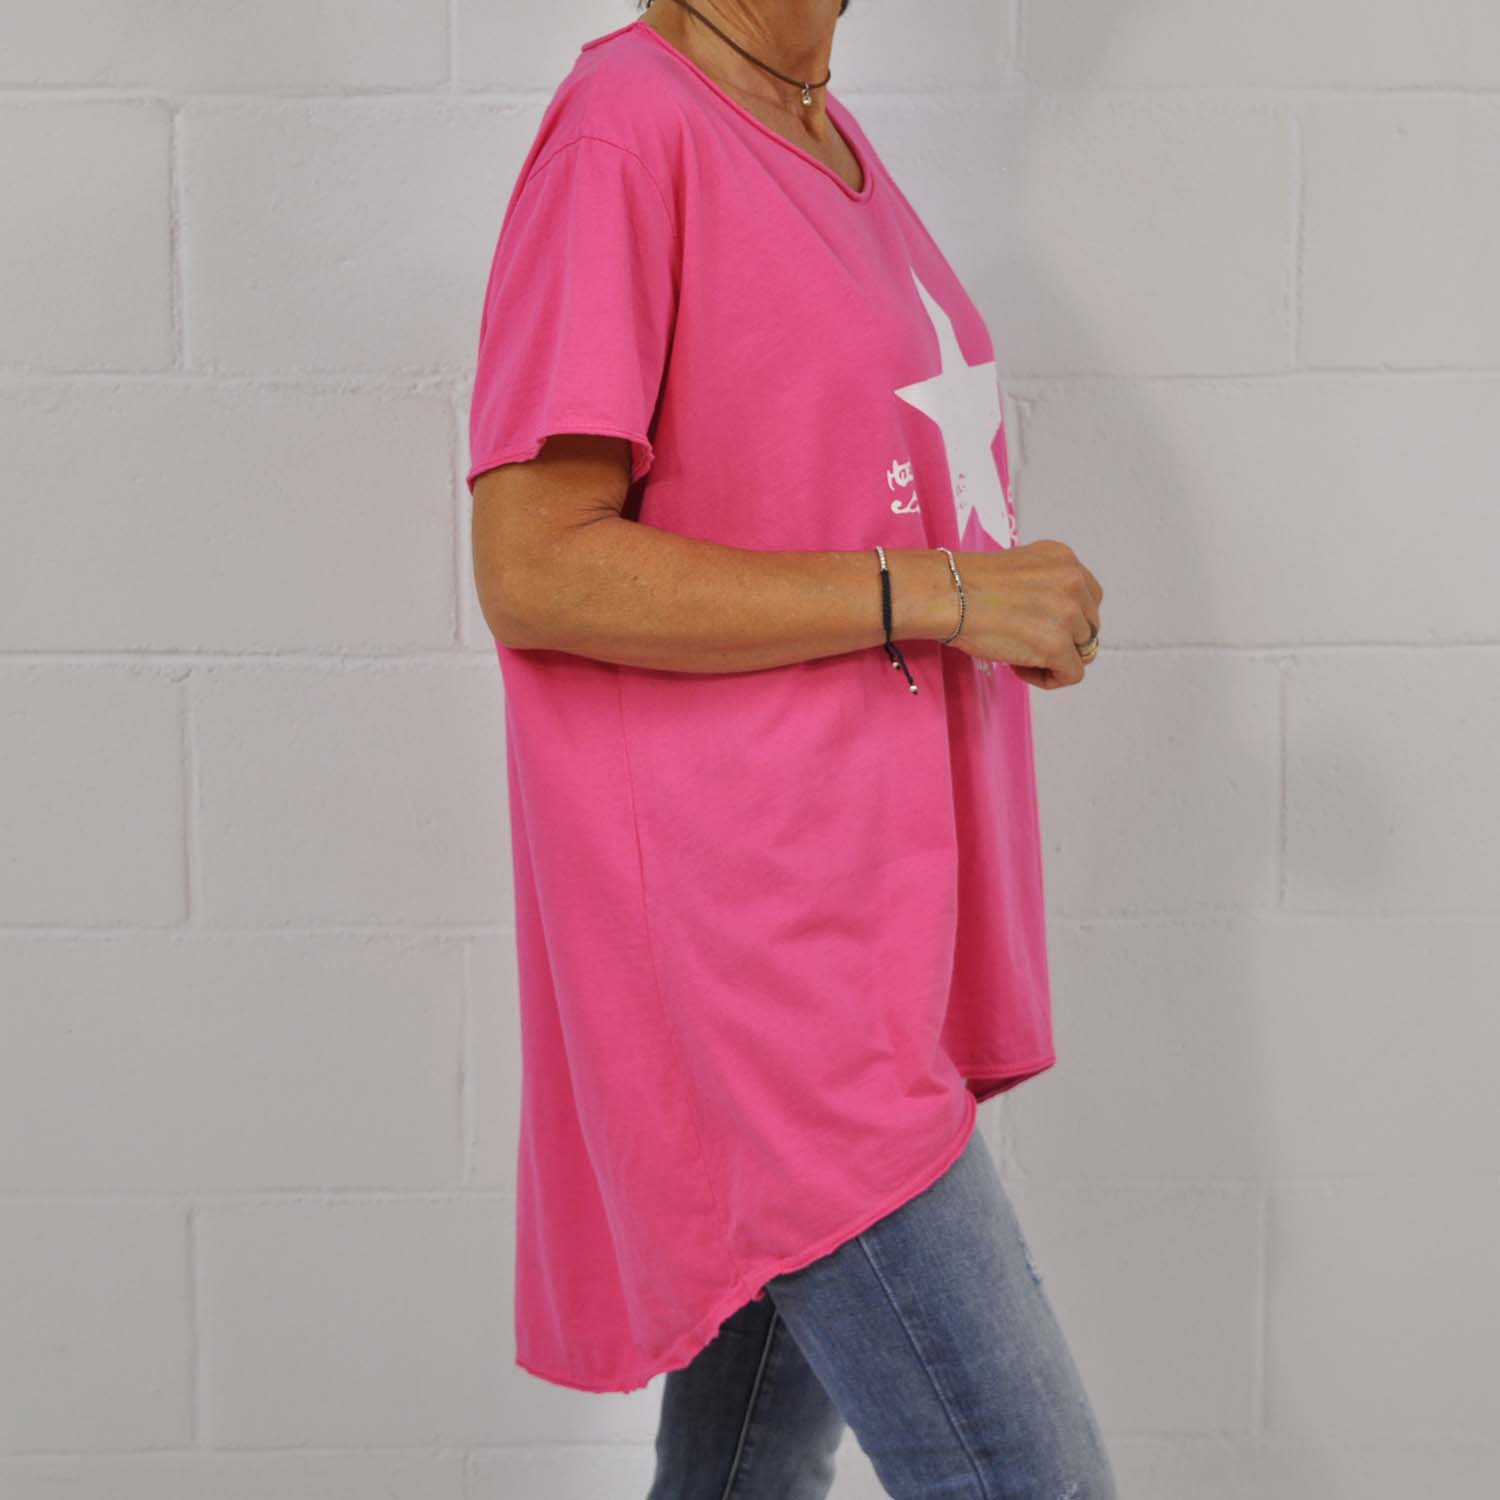 Pink Amisy asymmetric T-shirt